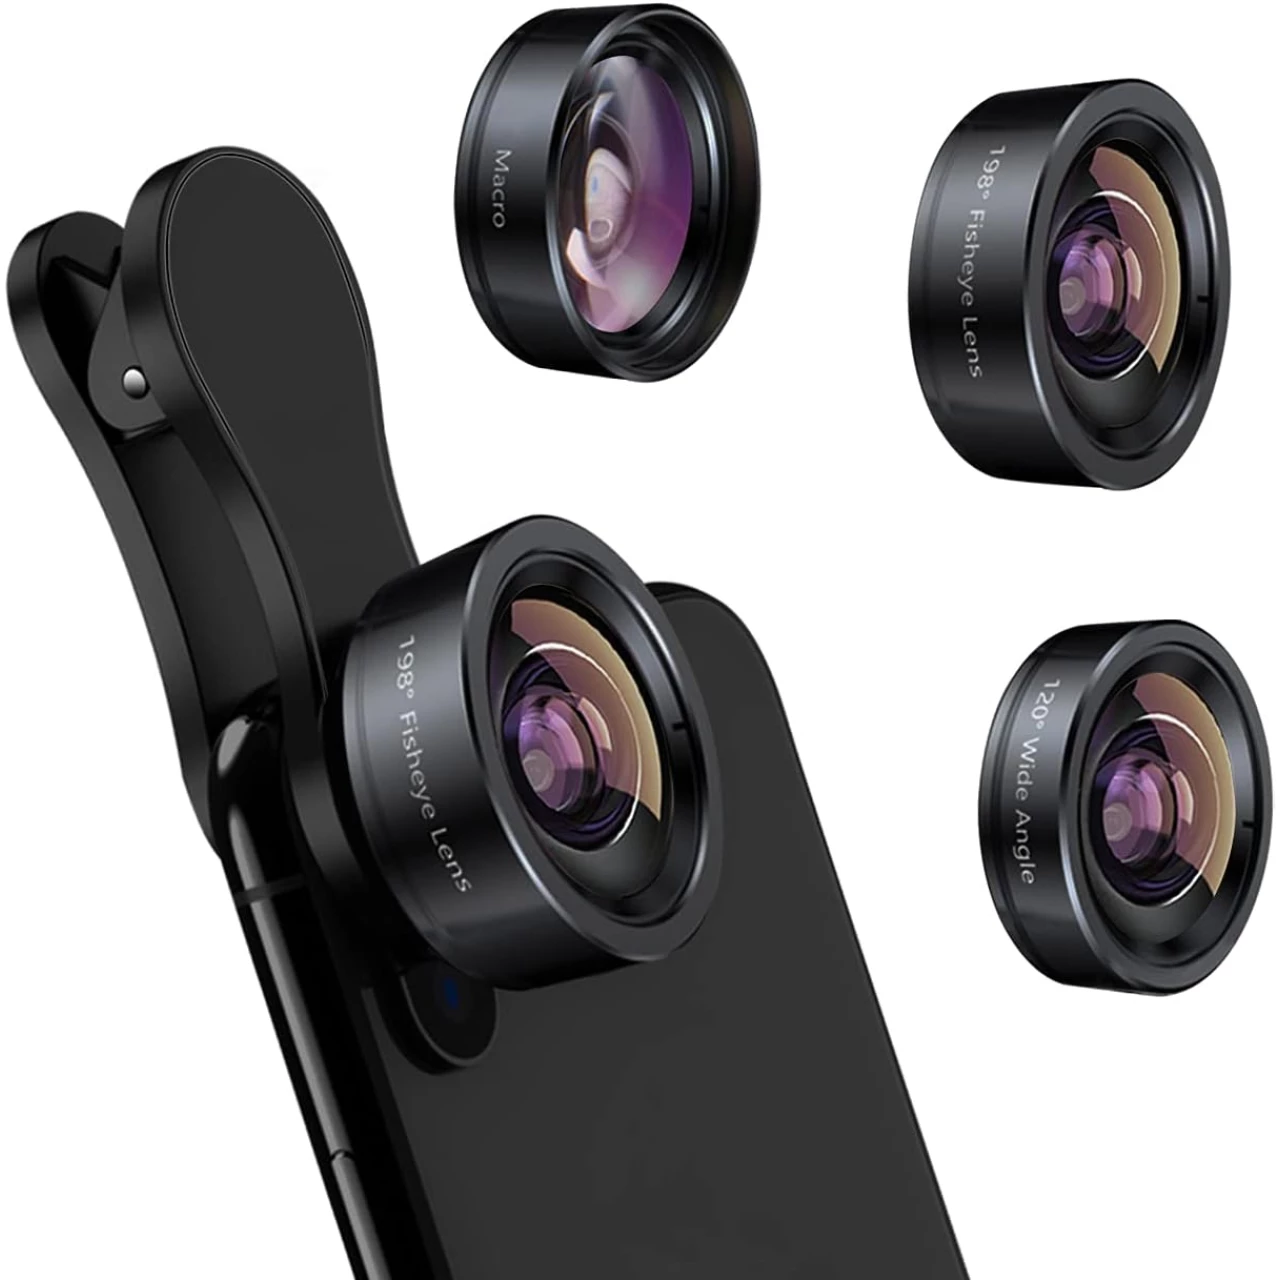 KEYWING Phone Camera Lens 3 in 1 Phone Lens Kit